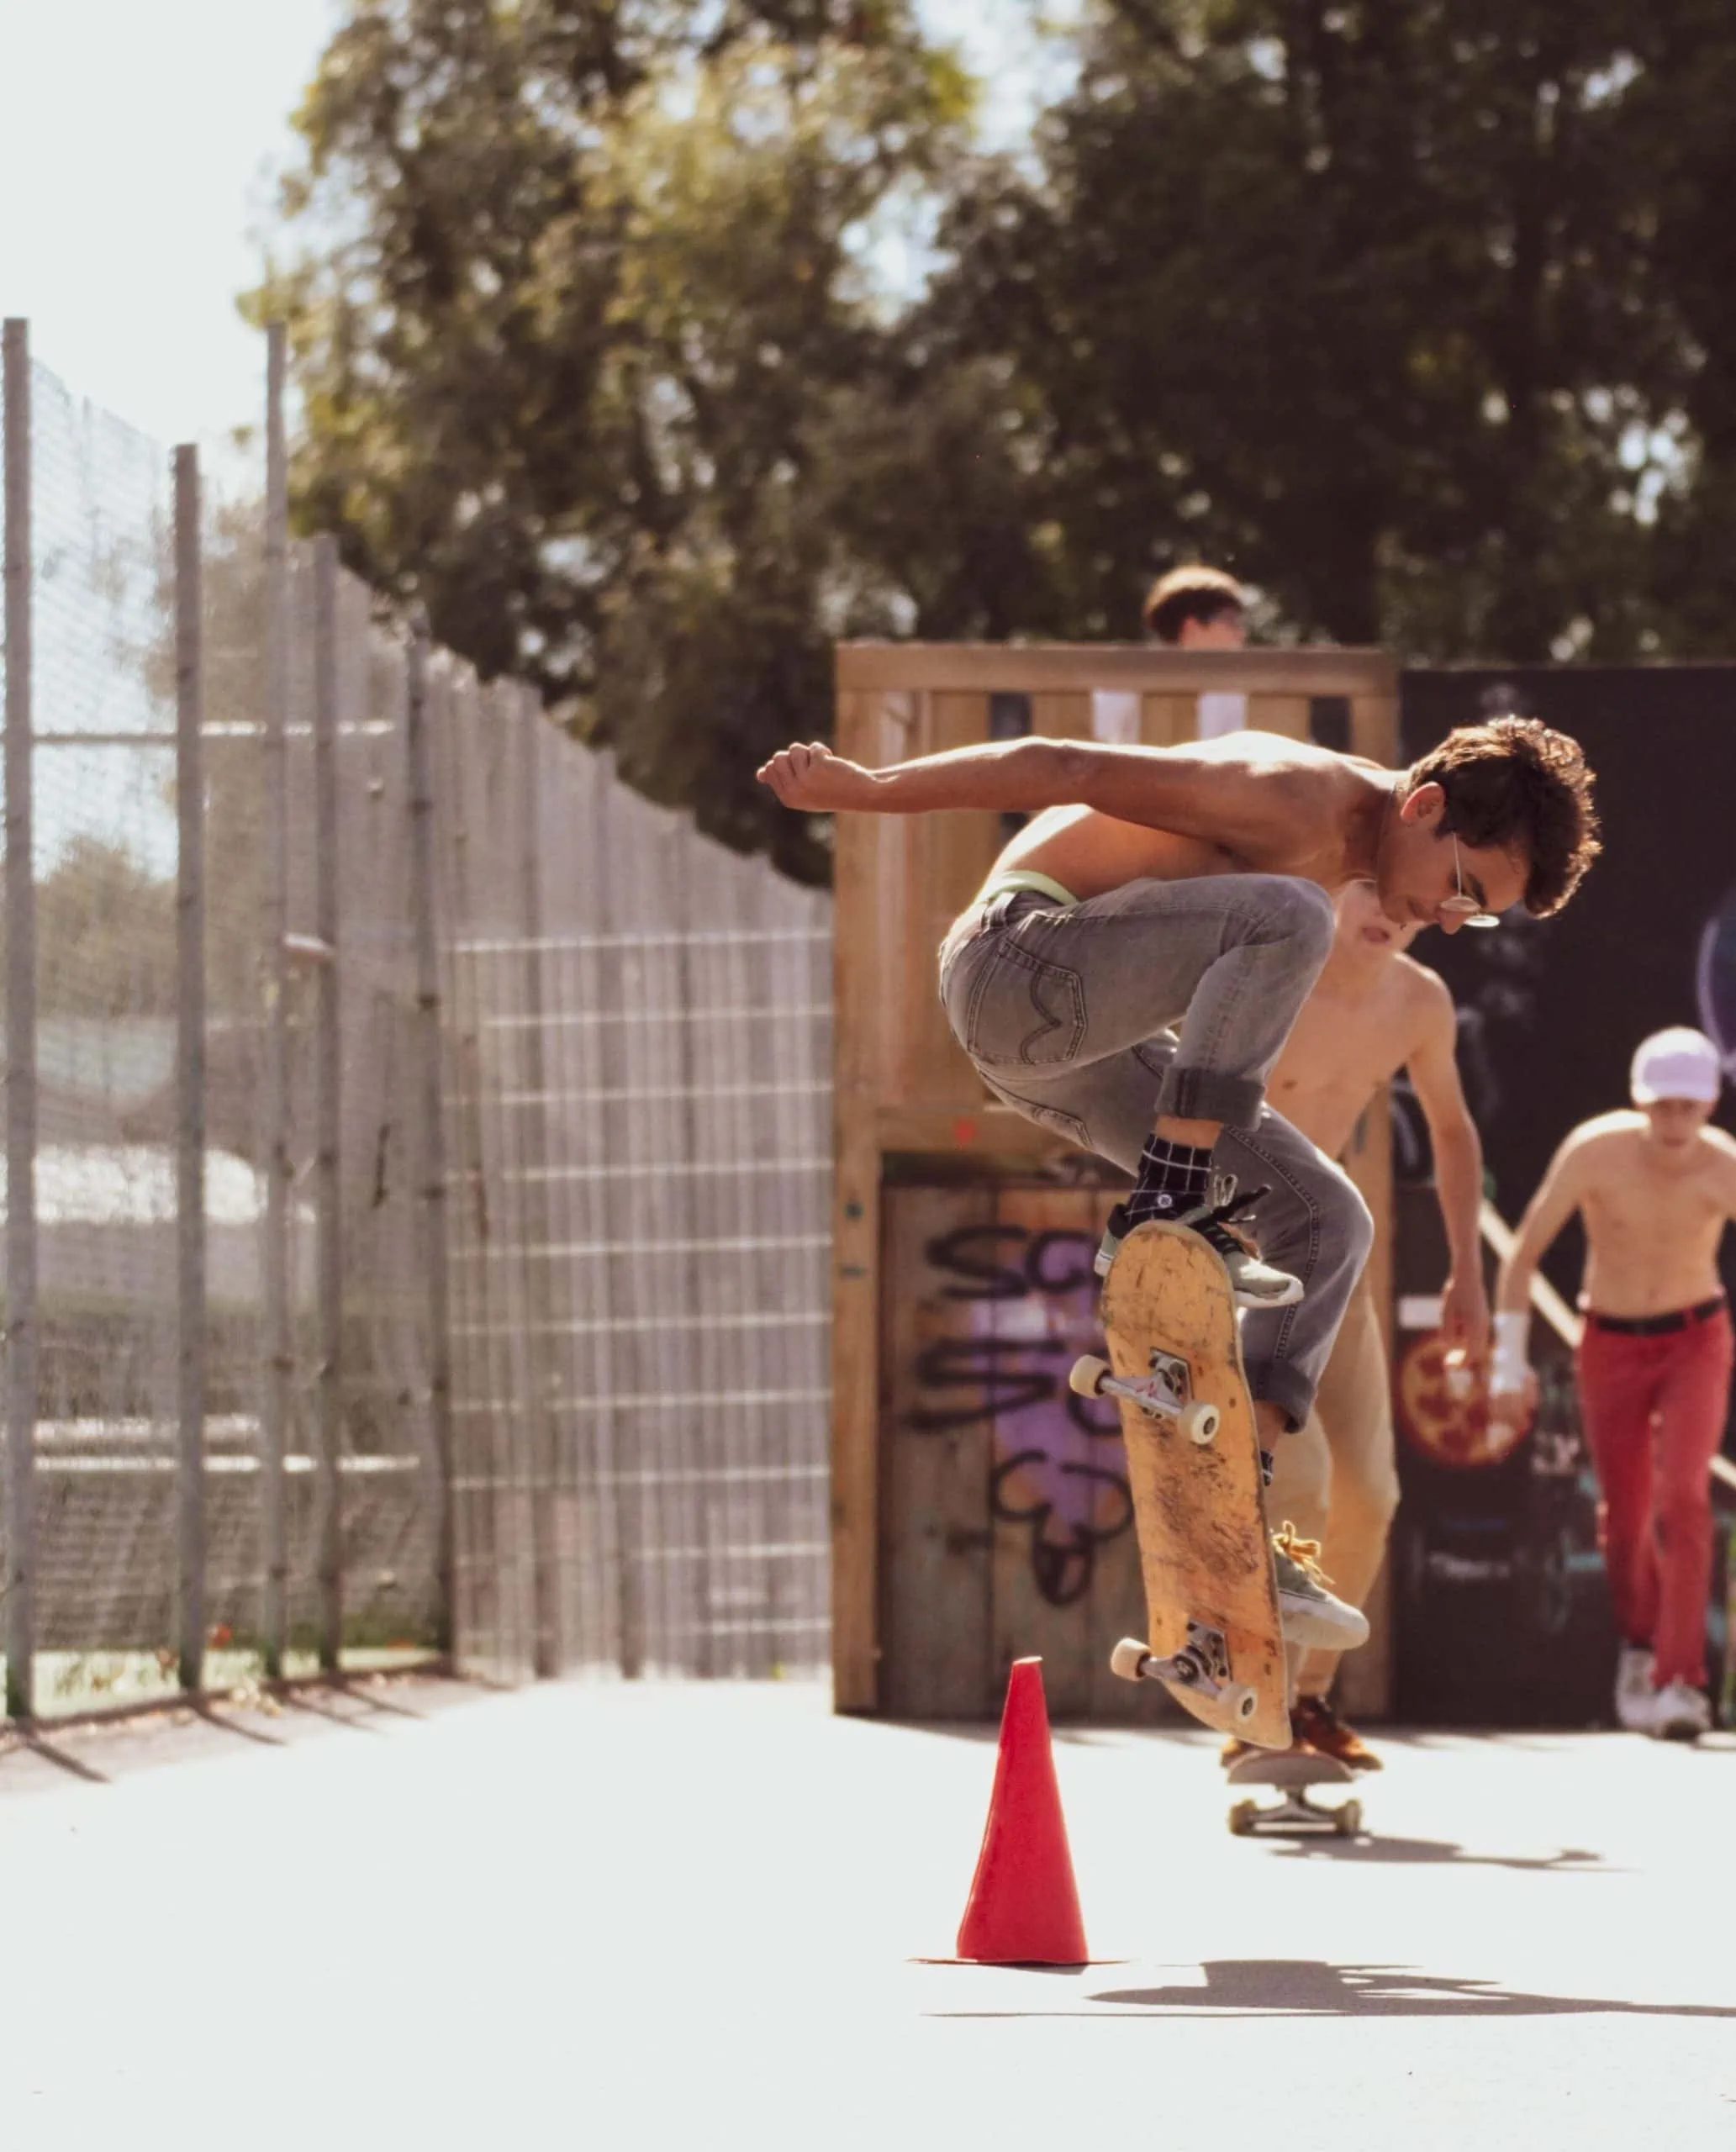 Pfingstferien-Sportkurse: Skateboard fahren macht Spaß bei High five e.V. für Kinder und Jugendliche in München // HIMBEER